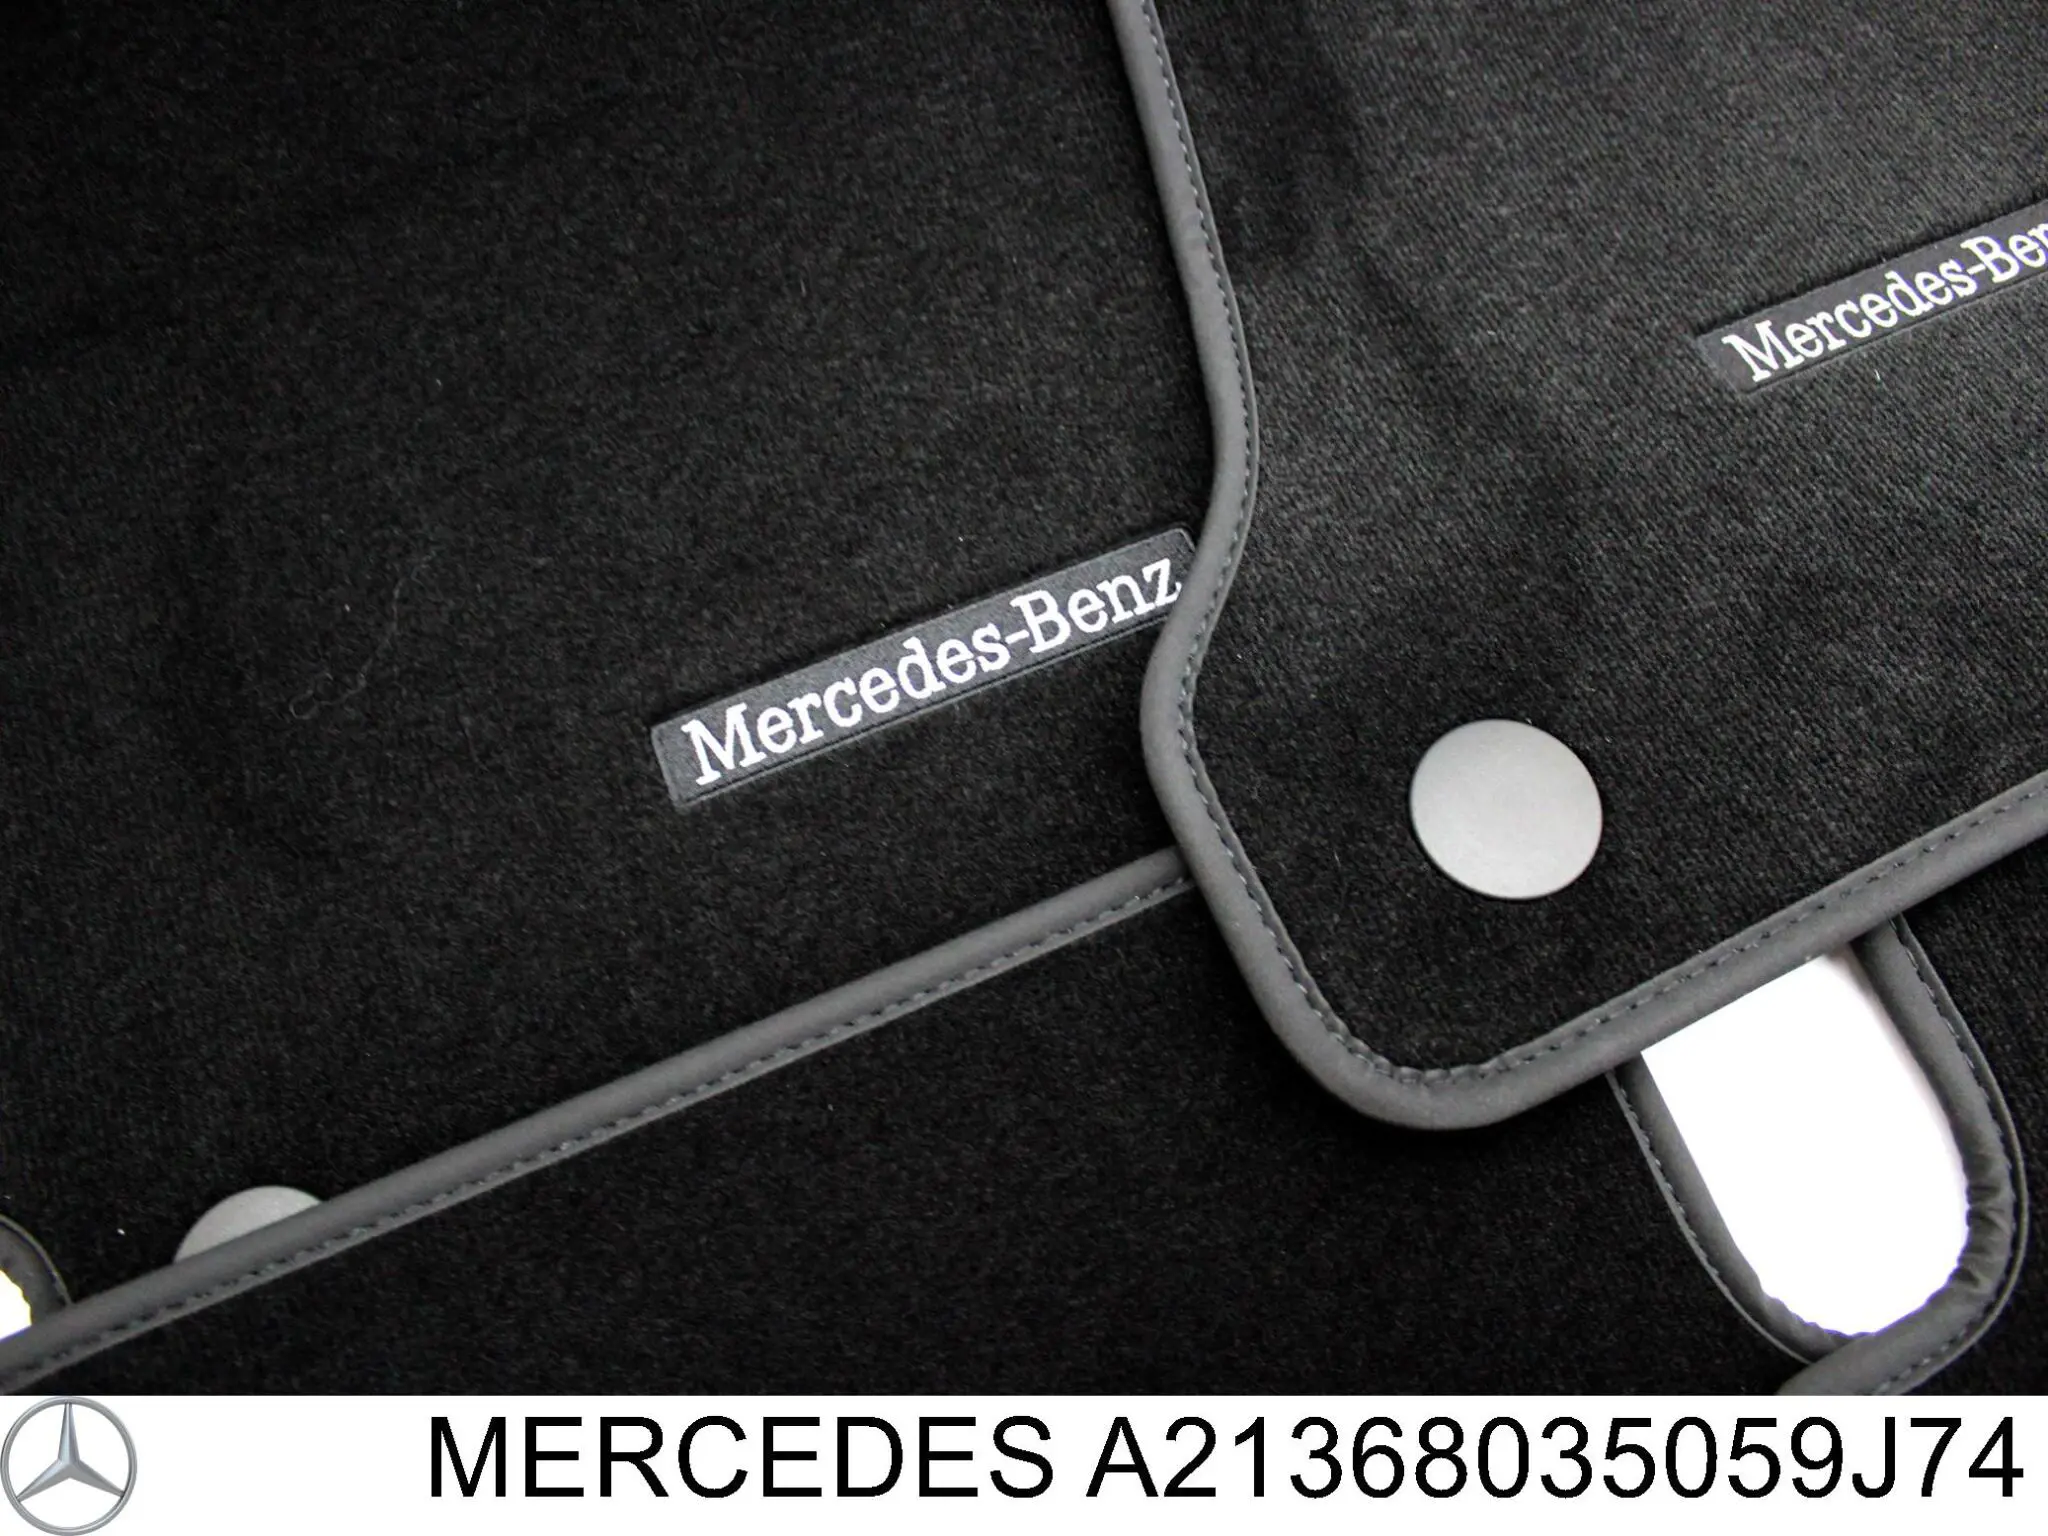 Alfombrillas Mercedes E S213